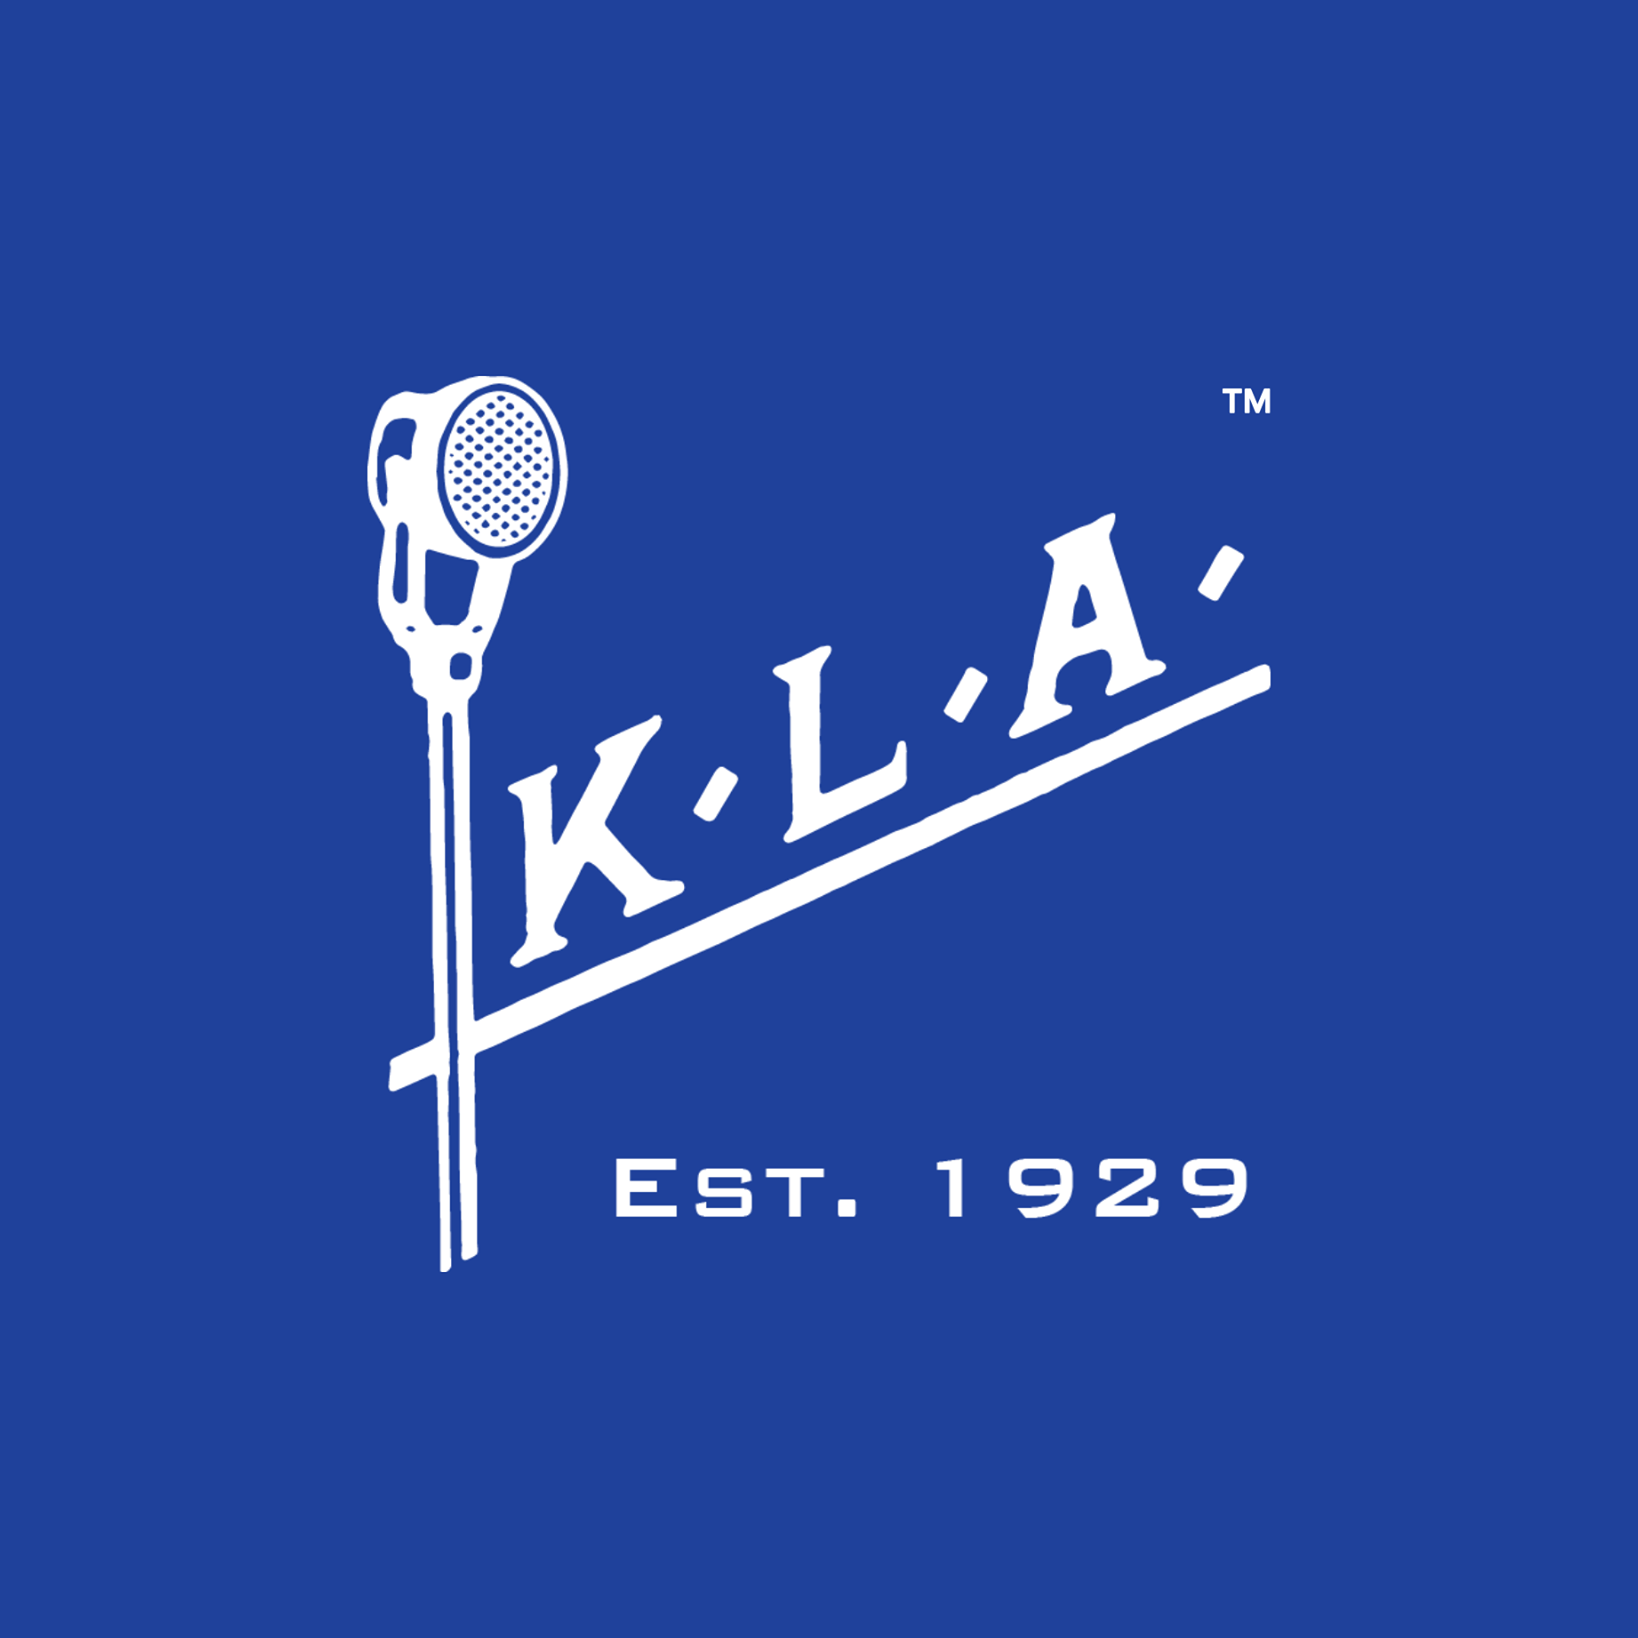 KLA Laboratories